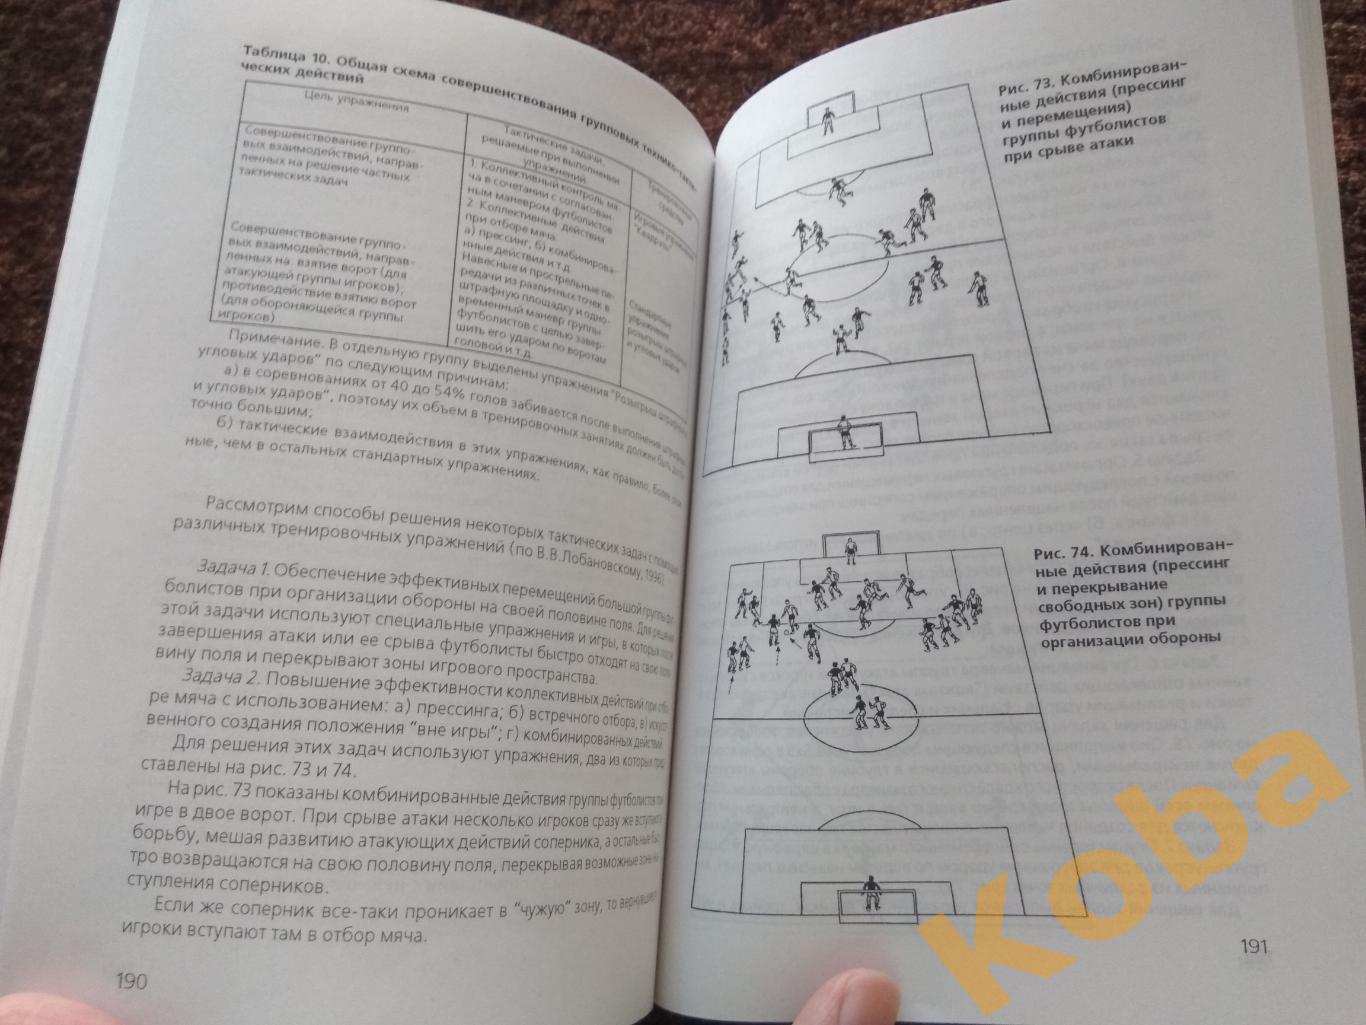 Футбол учебник для институтов физической культуры Полишкис Выжгин 1999 2